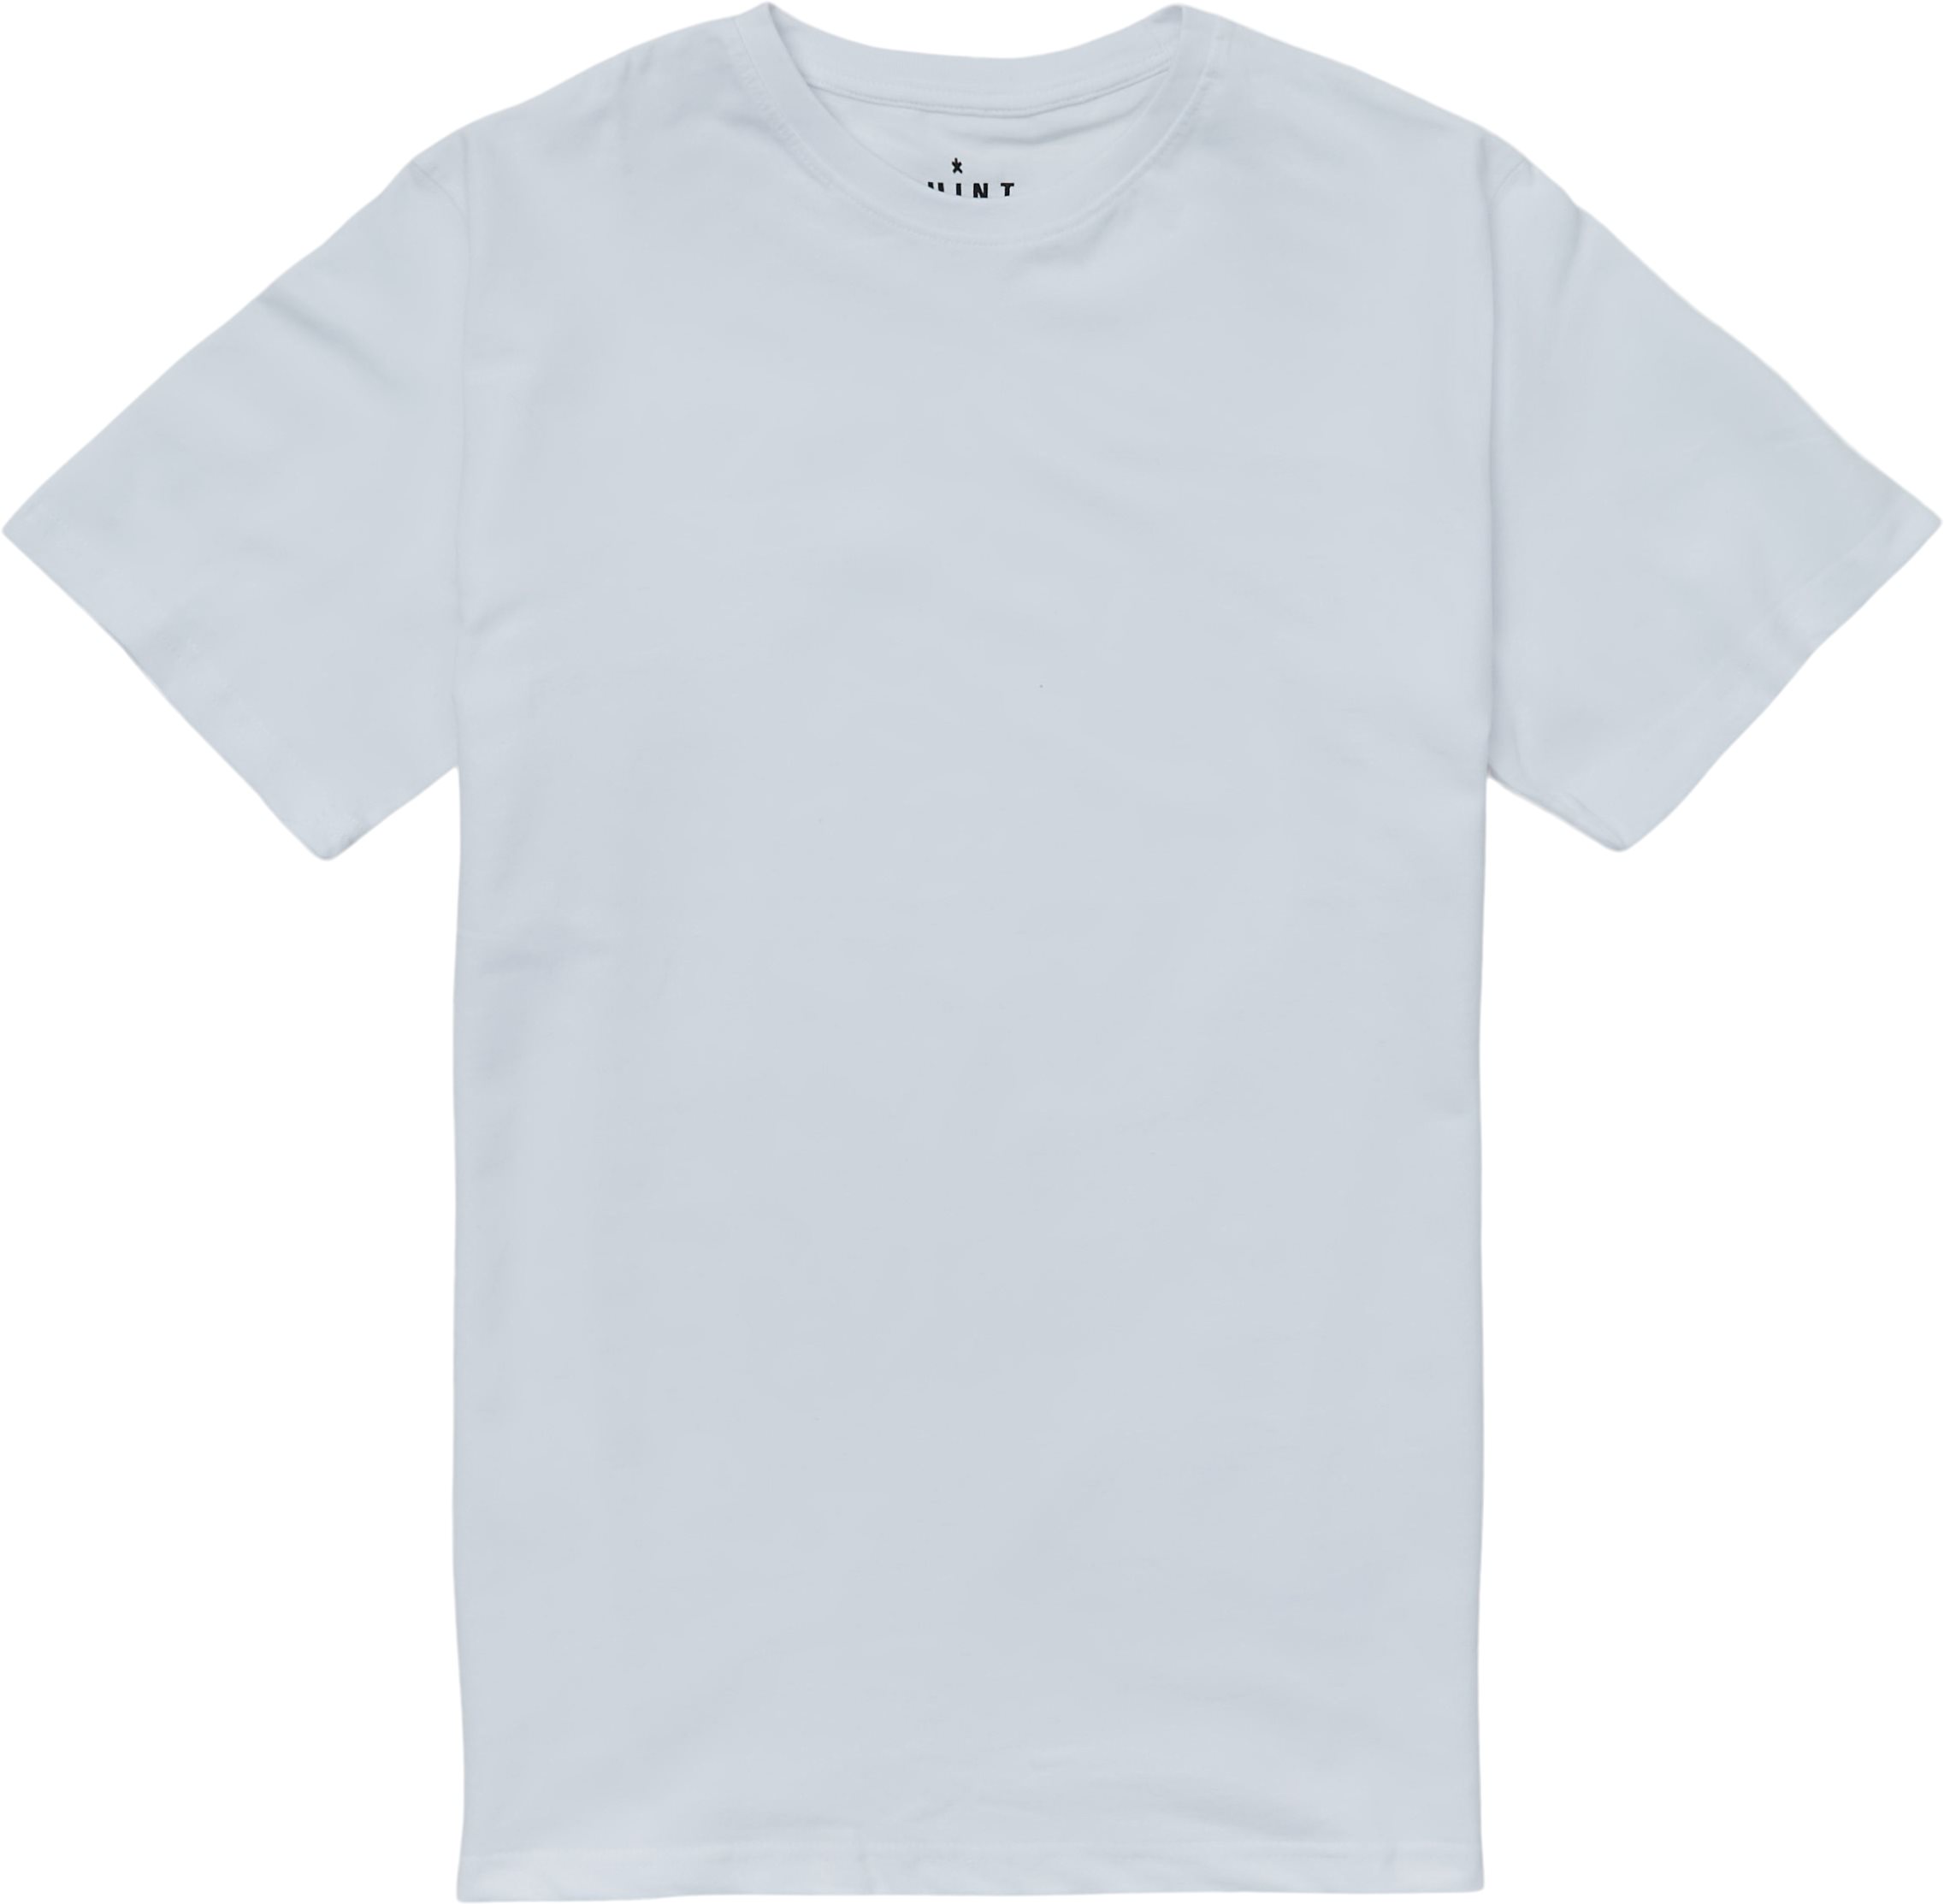 qUINT T-shirts BRANDON White